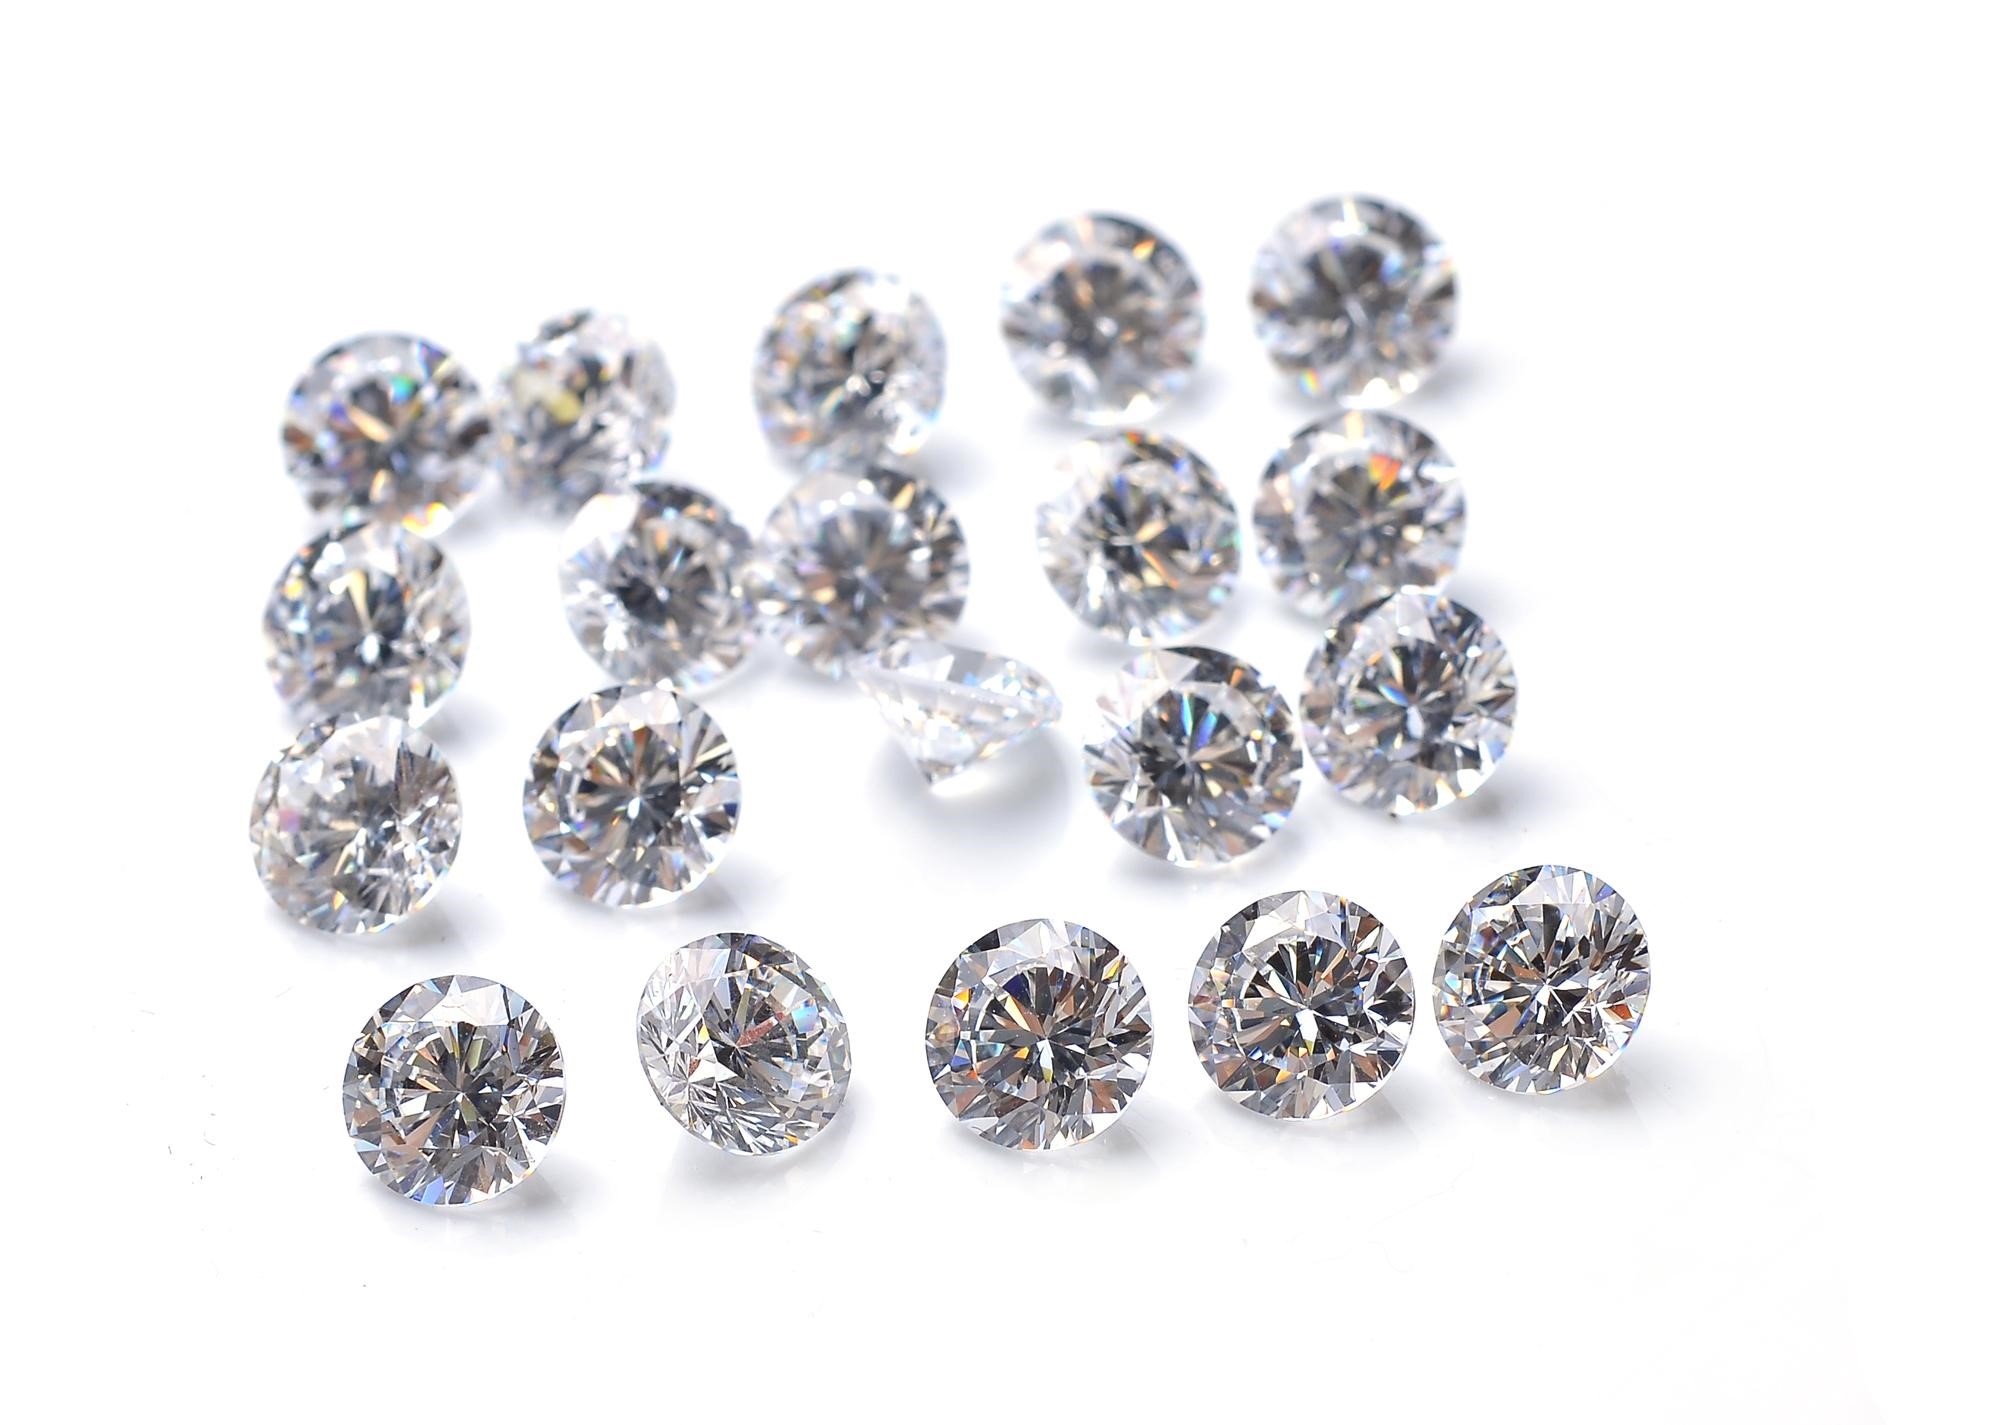 ダイヤモンド の原石とは 種類や形 購入時の注意まで理解しよう 婚約指輪 結婚指輪のi Primo アイプリモ カップルに人気の婚約指輪 結婚指輪はi Primo アイプリモ